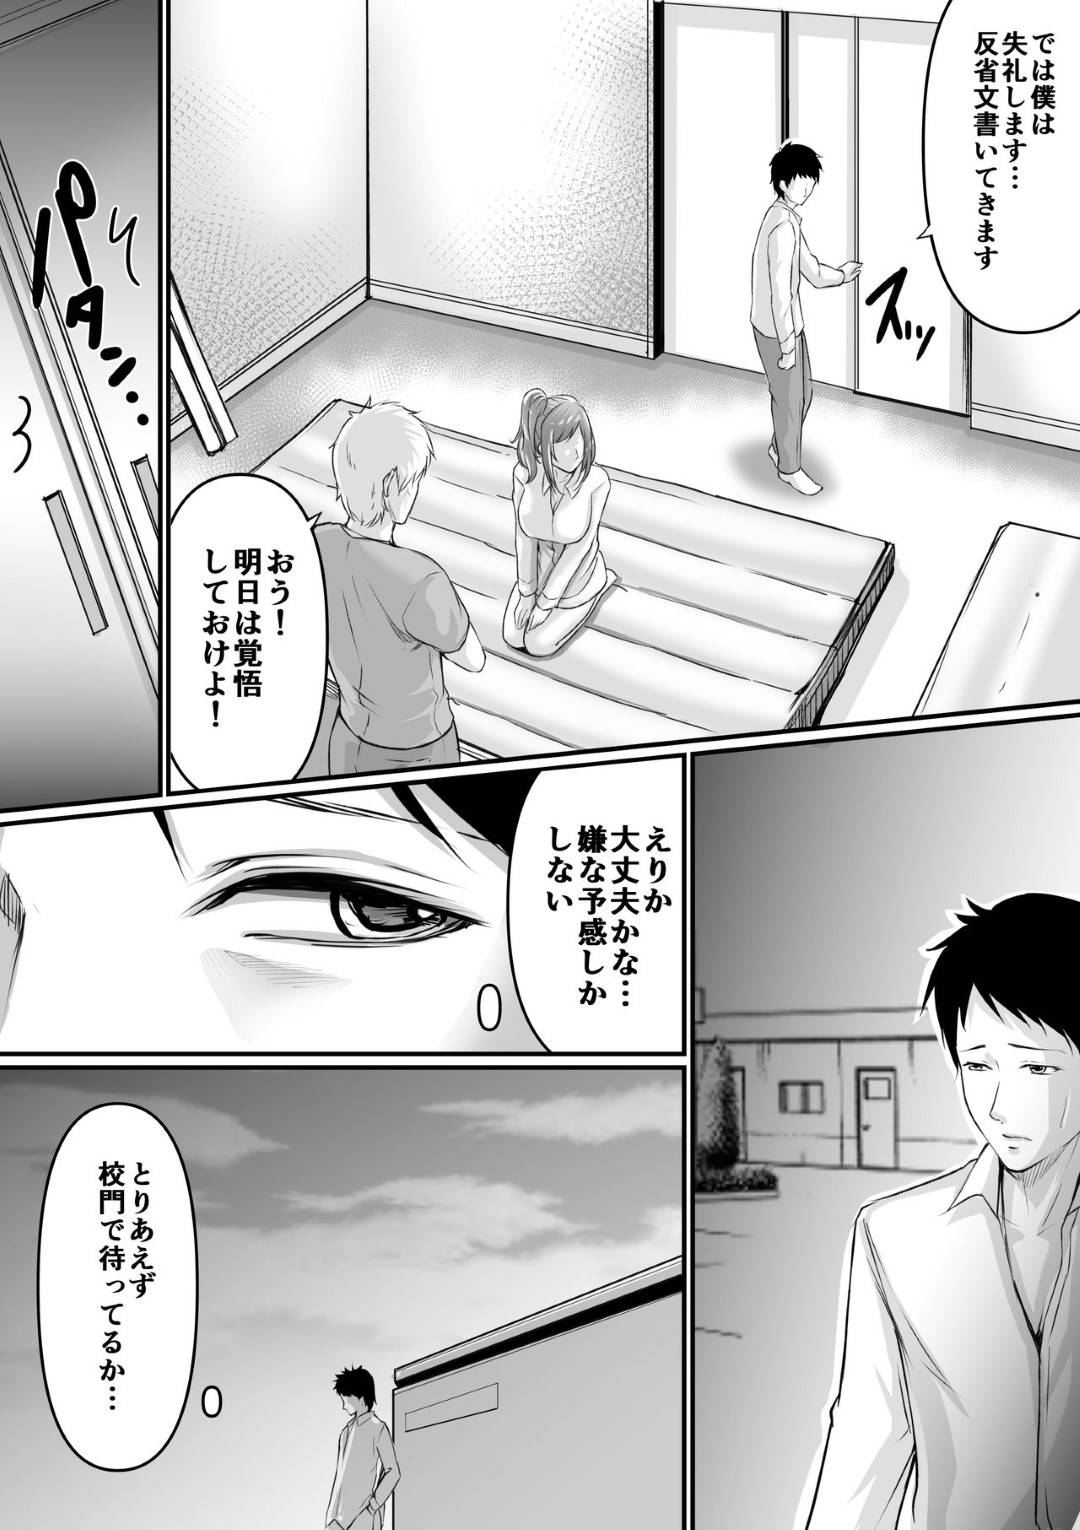 【エロ漫画】彼氏と体育倉庫でHしているのがバレた巨乳JKは、先生にフェラを強要される…【あおいせな】